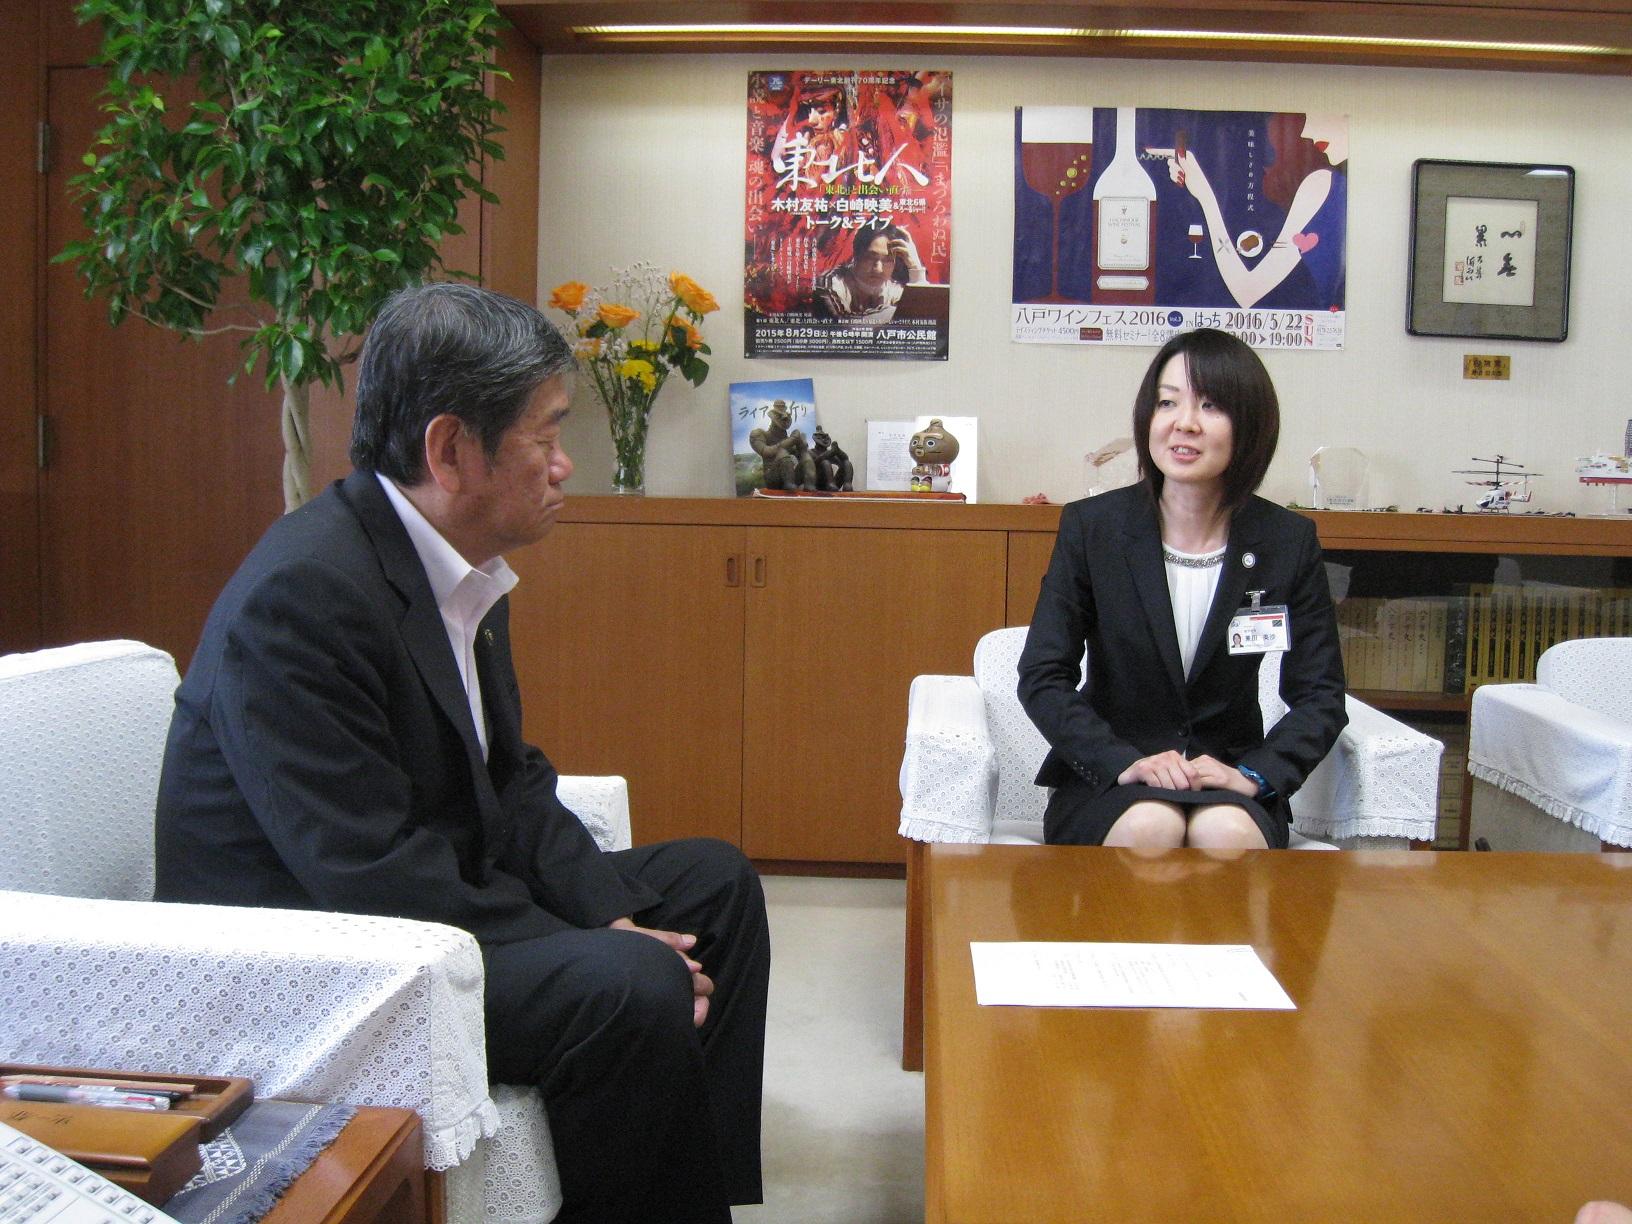 カネタミサさんが小林市長に表敬訪問し、談笑している写真